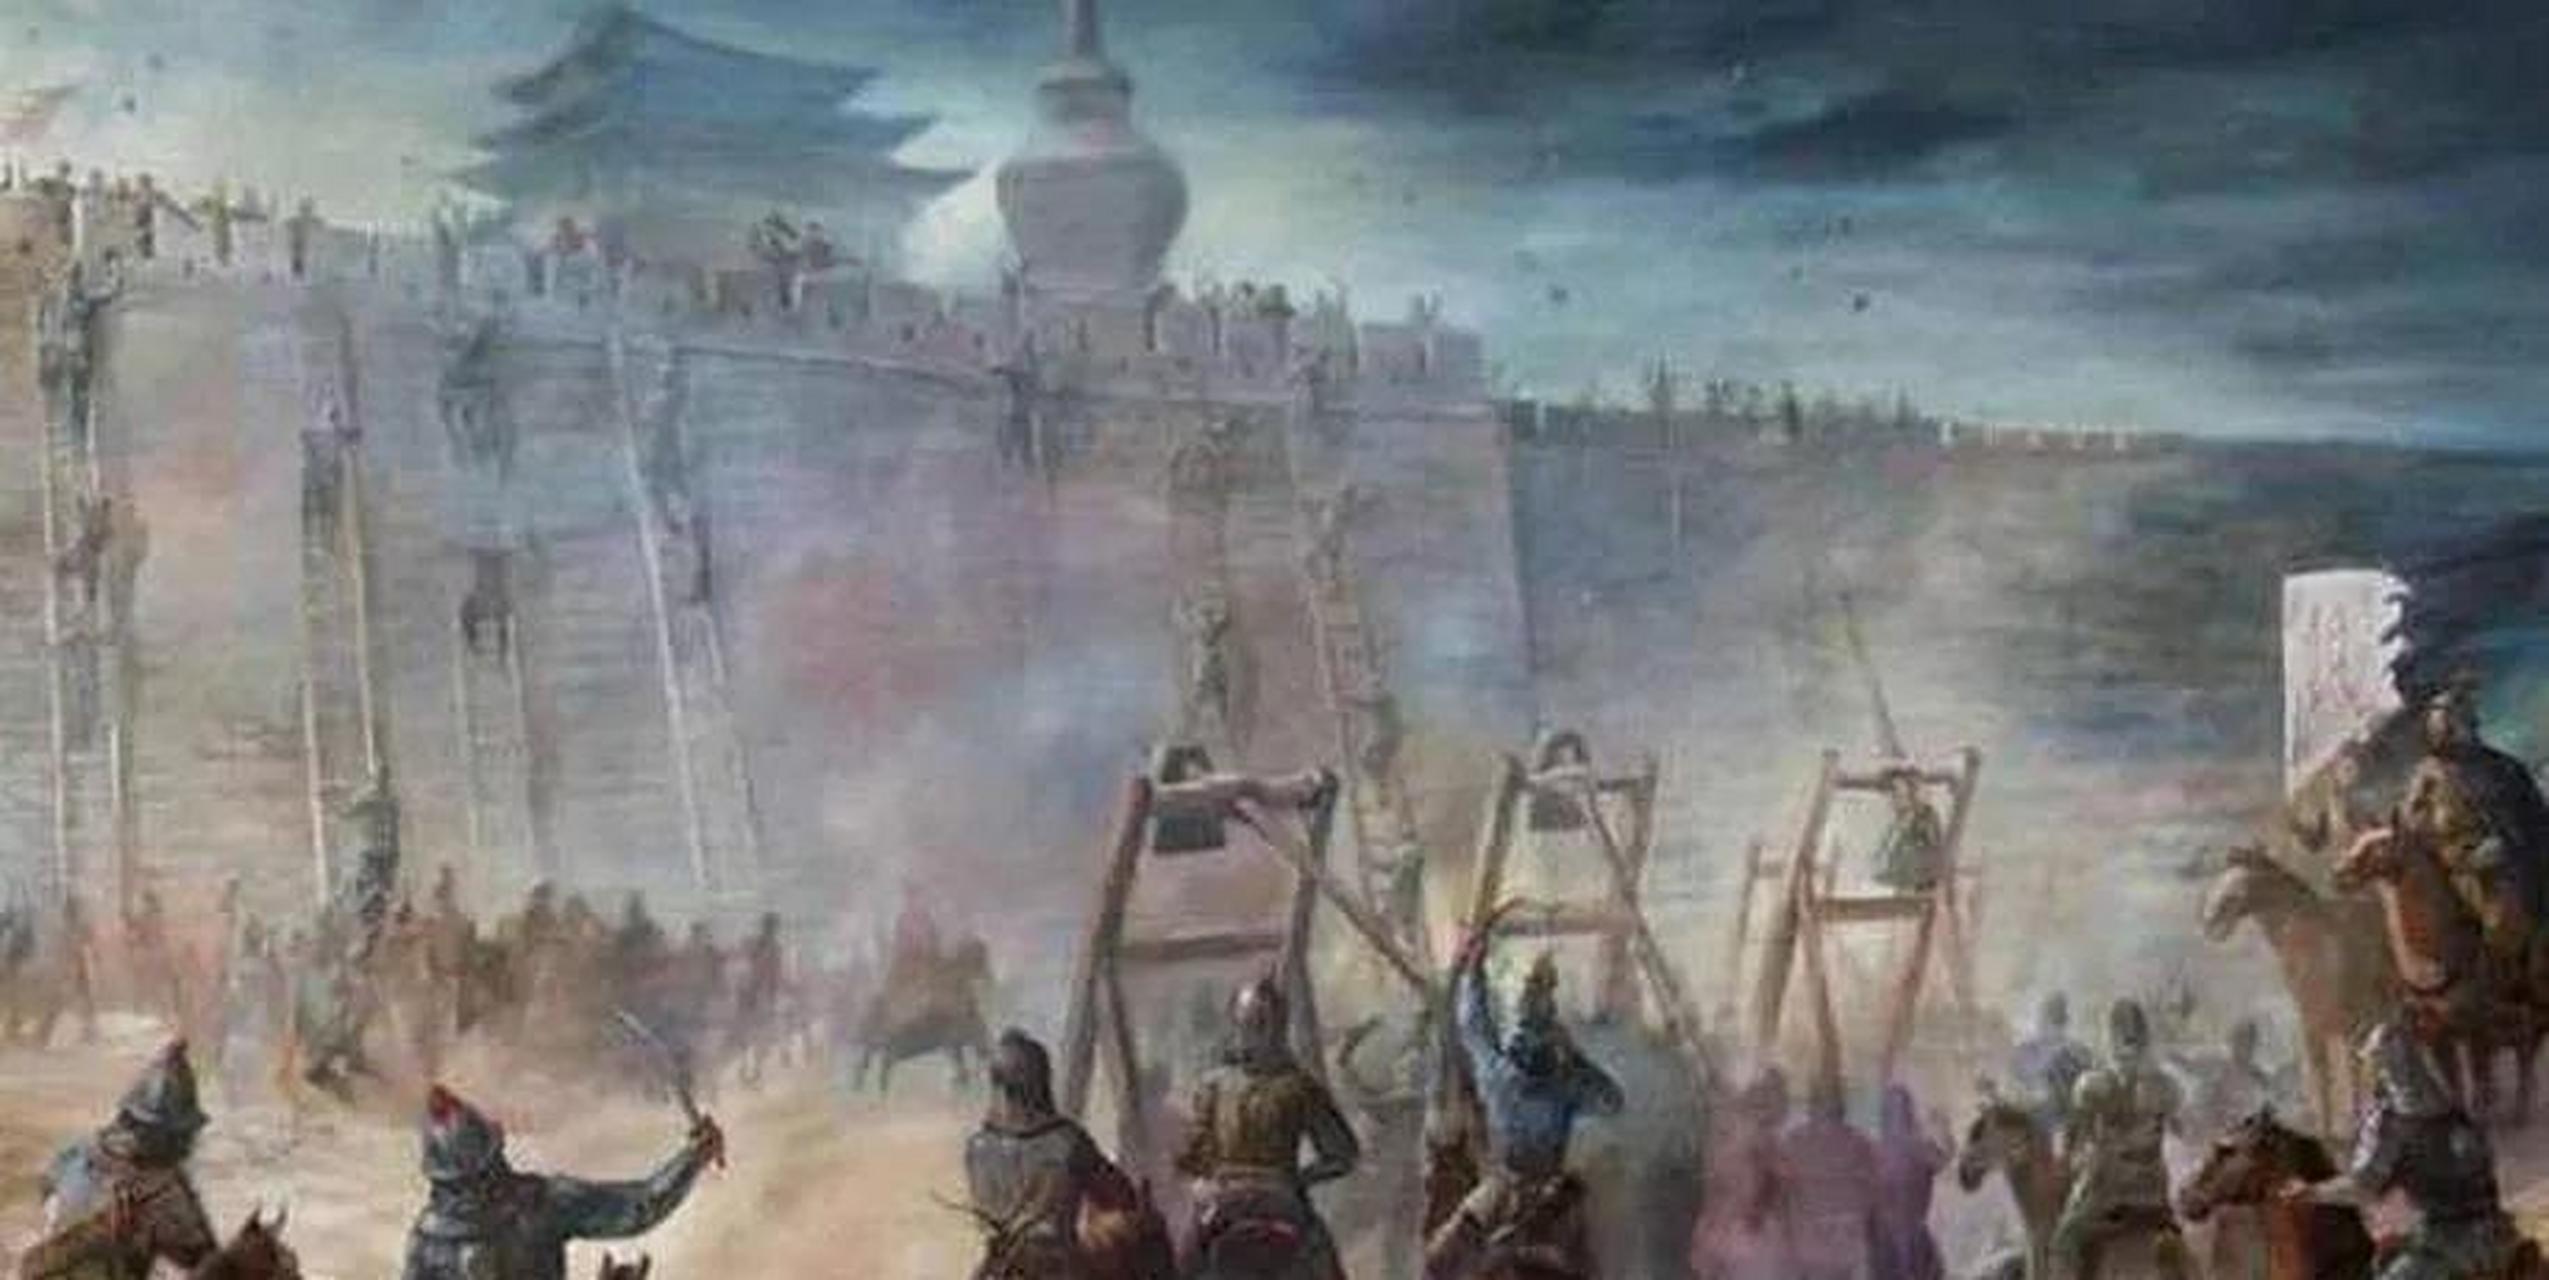 1400年,白沟河之战大败李景隆之后,燕王朱棣乘胜追击继续南进